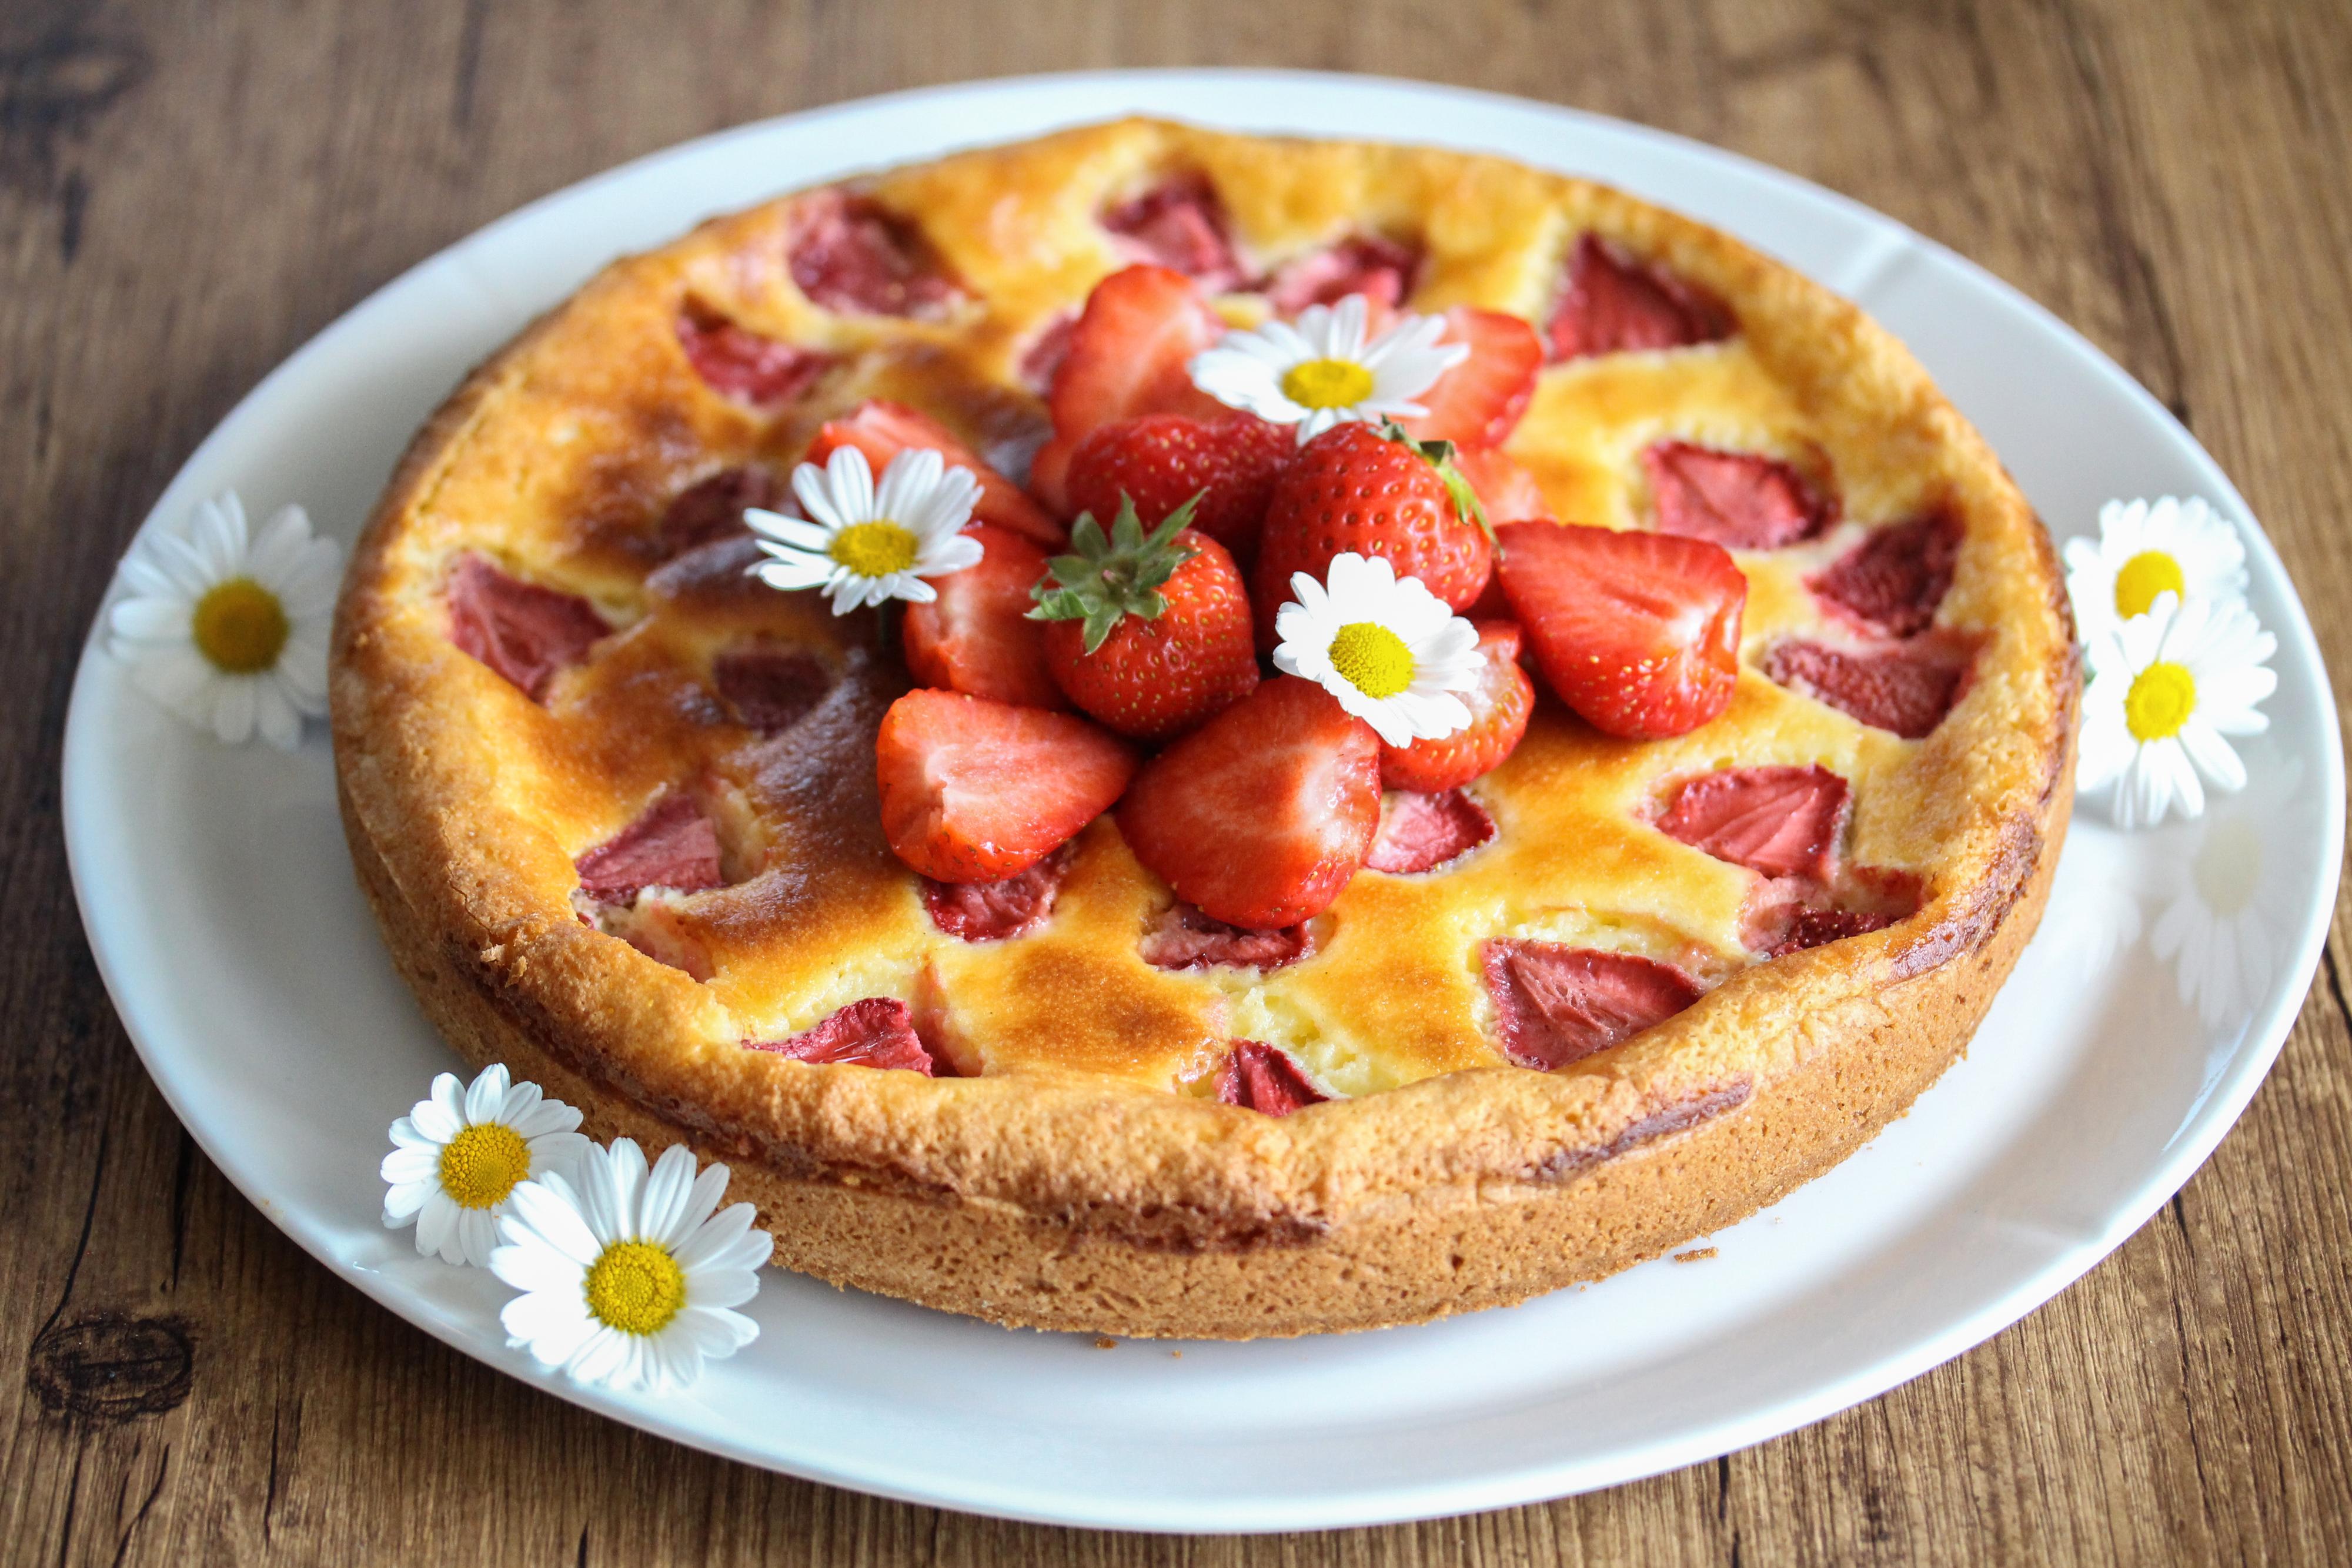 Pynt kaken med friske jordbær før servering. 